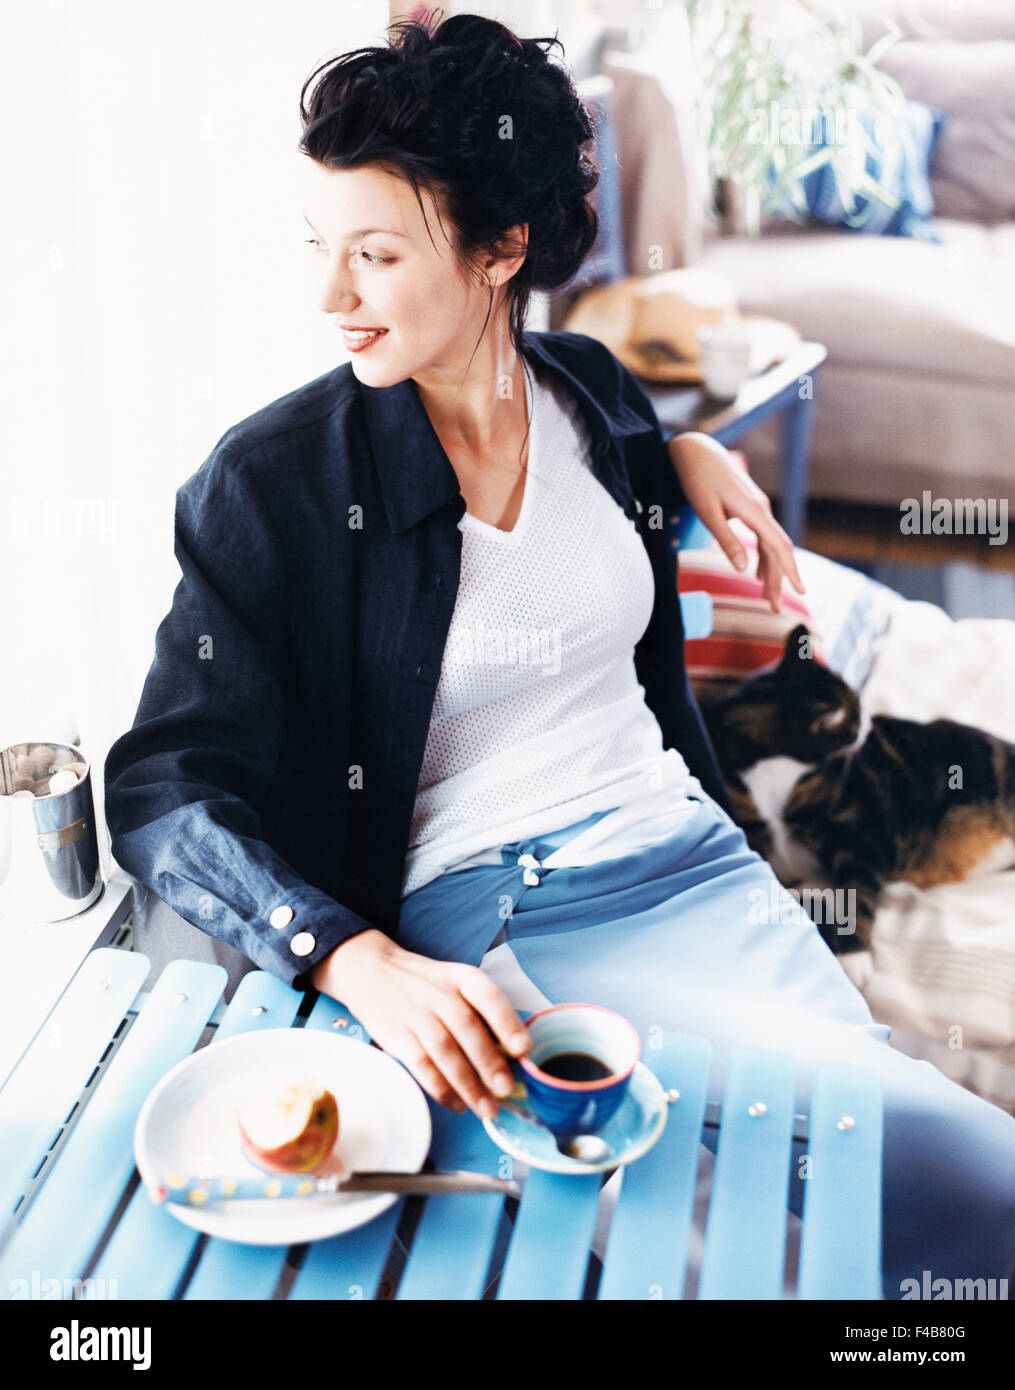 20-24 Jahre Erwachsene nur Katalog 2 Kaffee Kaffee Tasse Farbe Bild Tasse häuslichen Lebens trinken Essen und trinken freundliches glückliches Zuhause Stockfoto